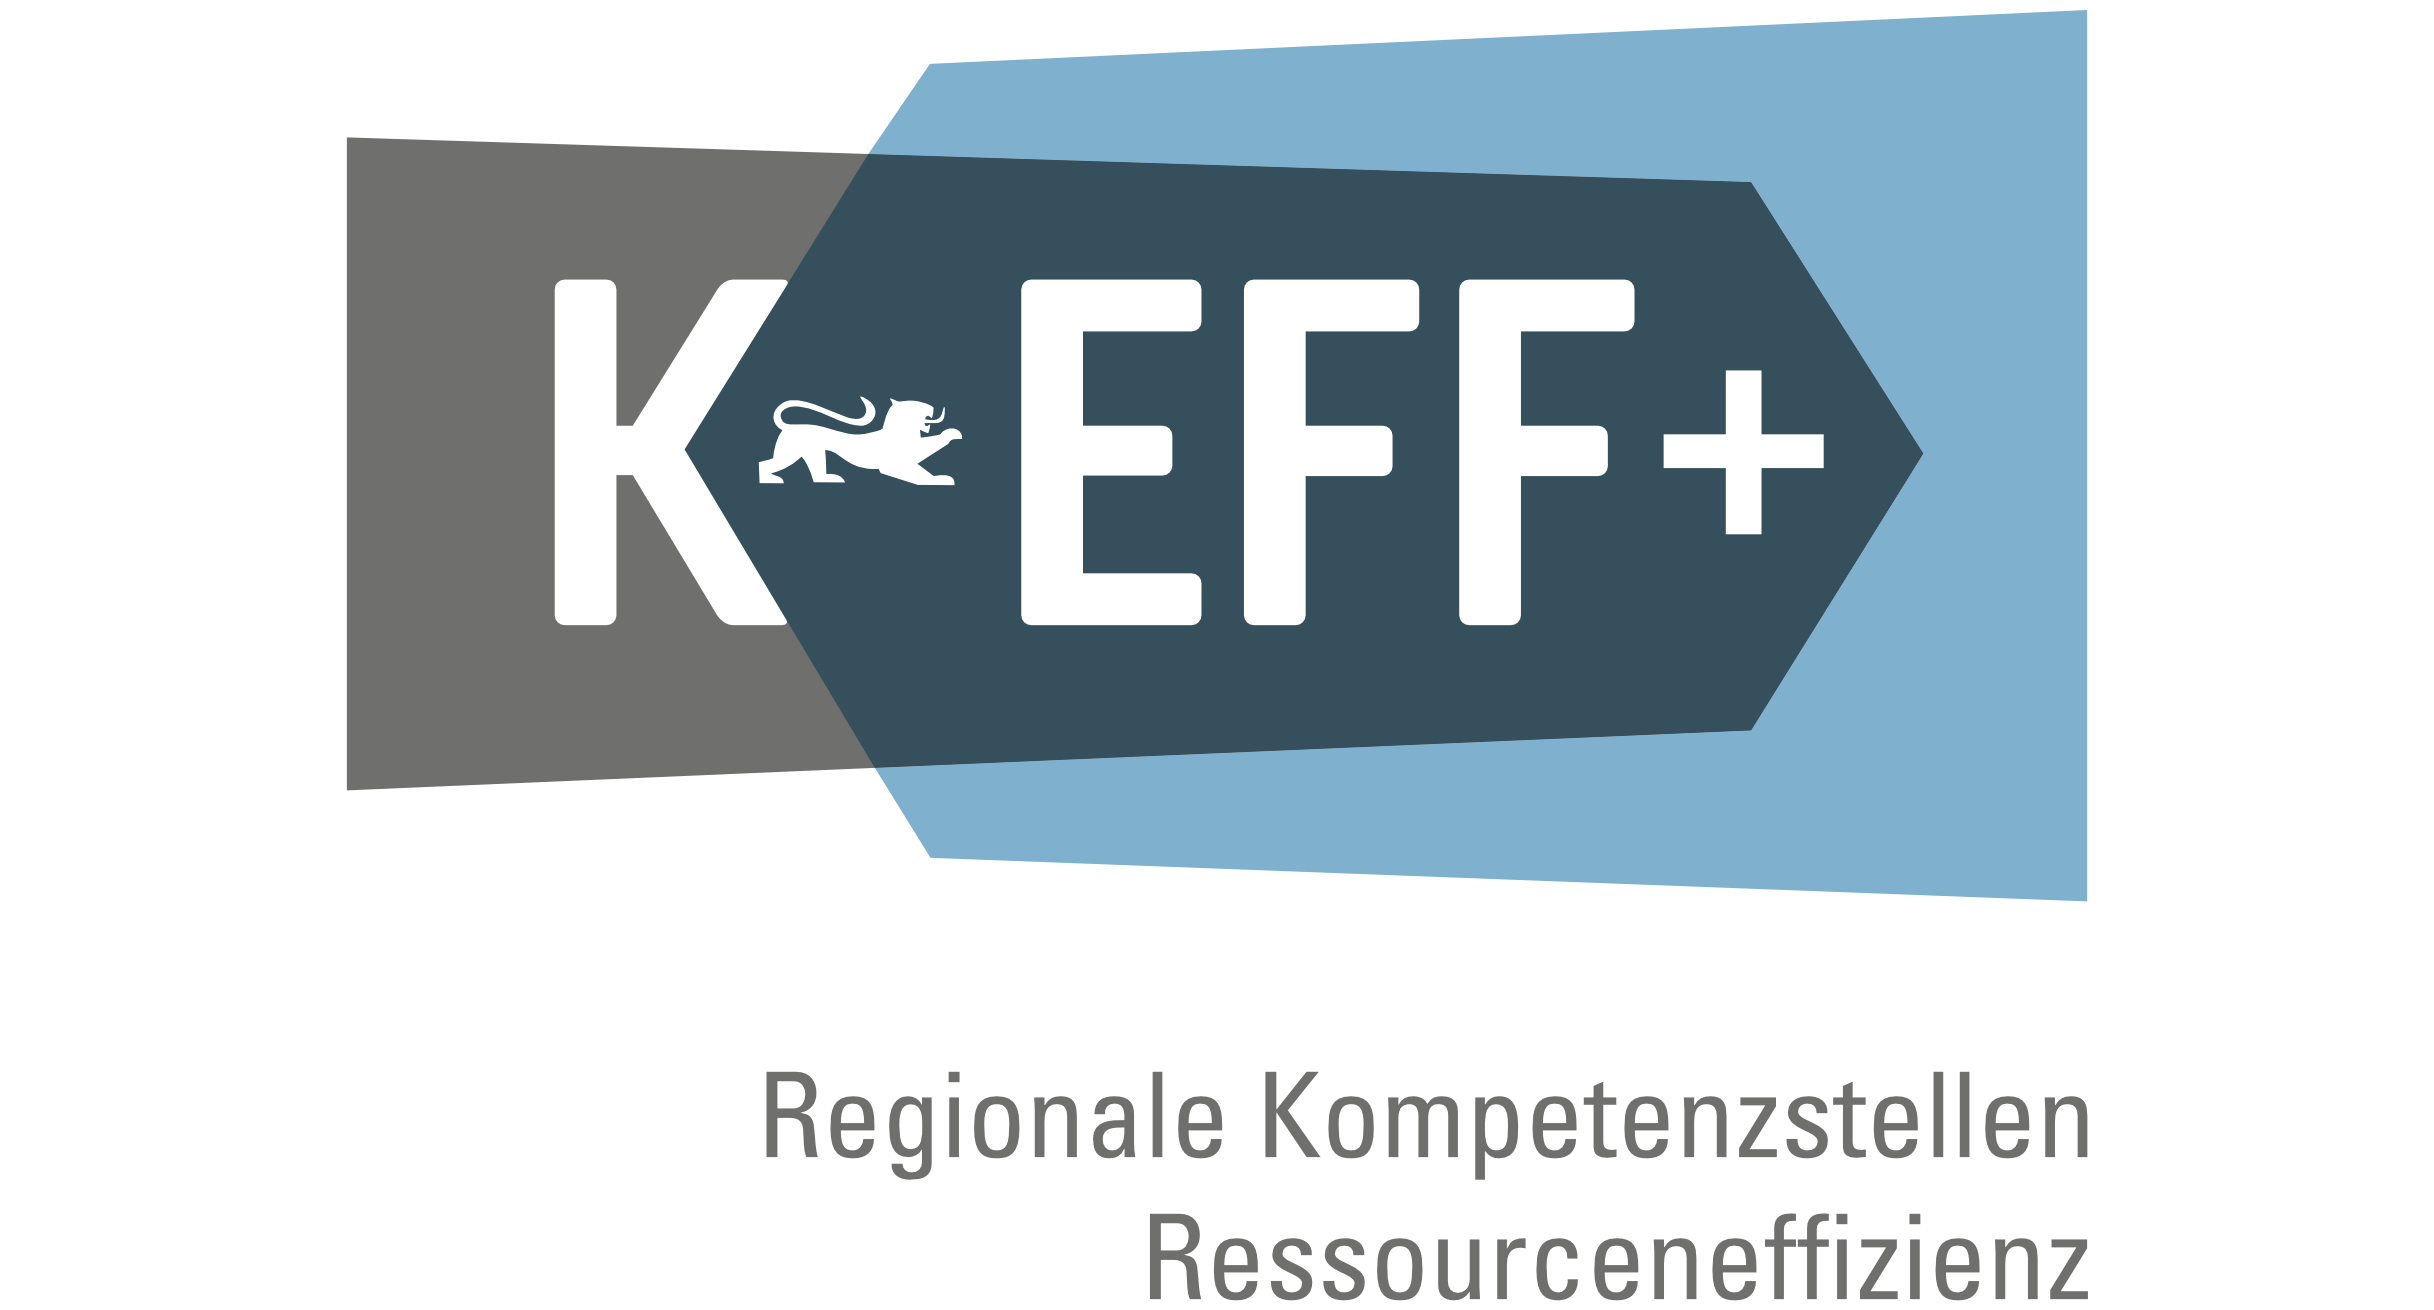 KEFFplus-Logo der Regionalen Kompetenzstellen Ressourceneffizienz